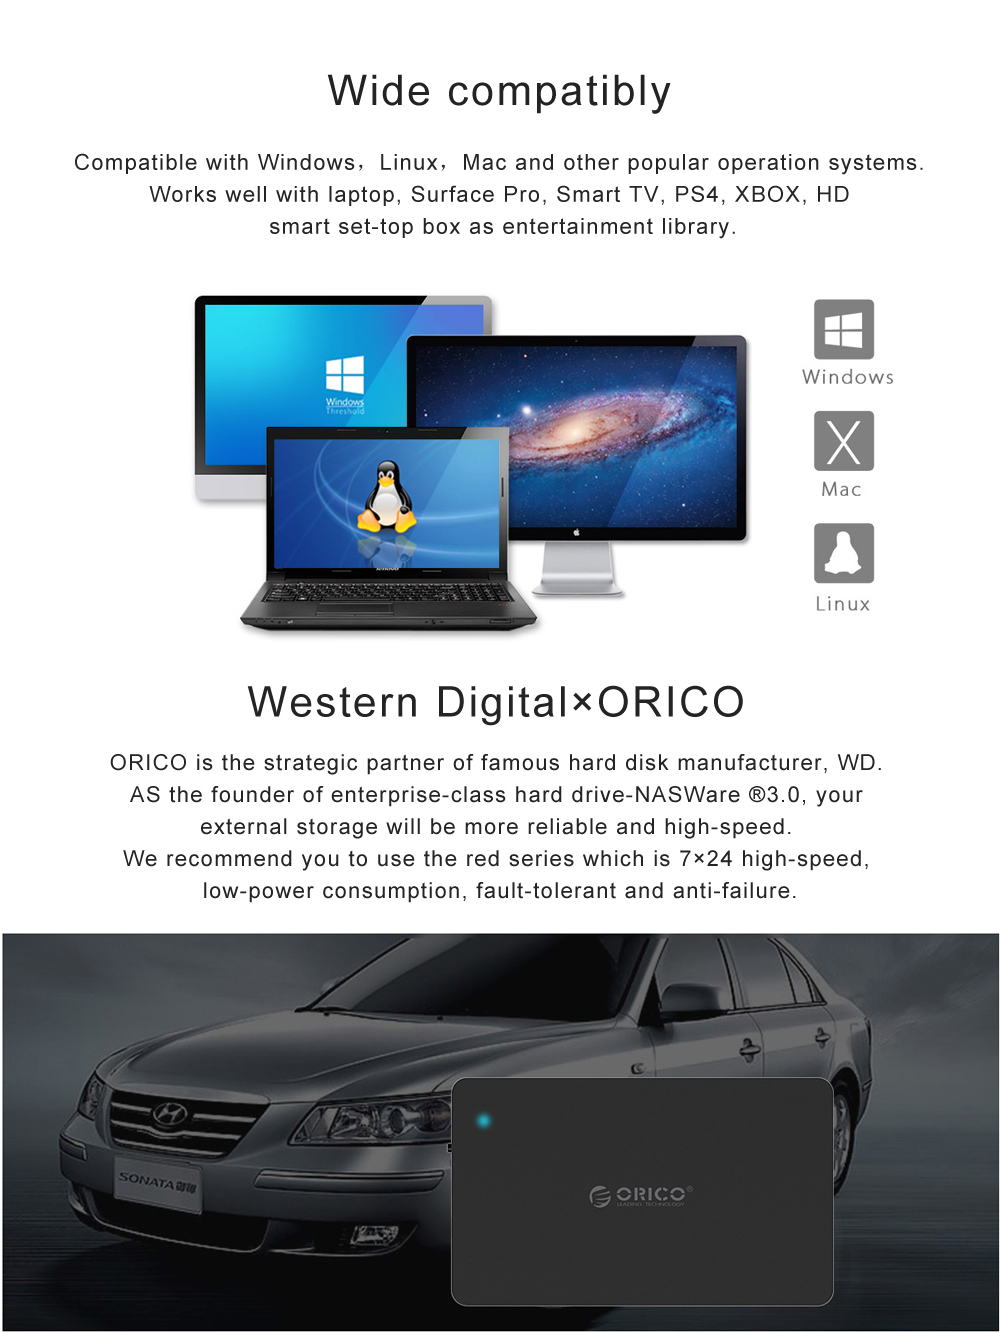 Orico NS500U3 5-Bay 3.5 inch USB 3.0 UASP Hard Drive Enclosure Storage System 9